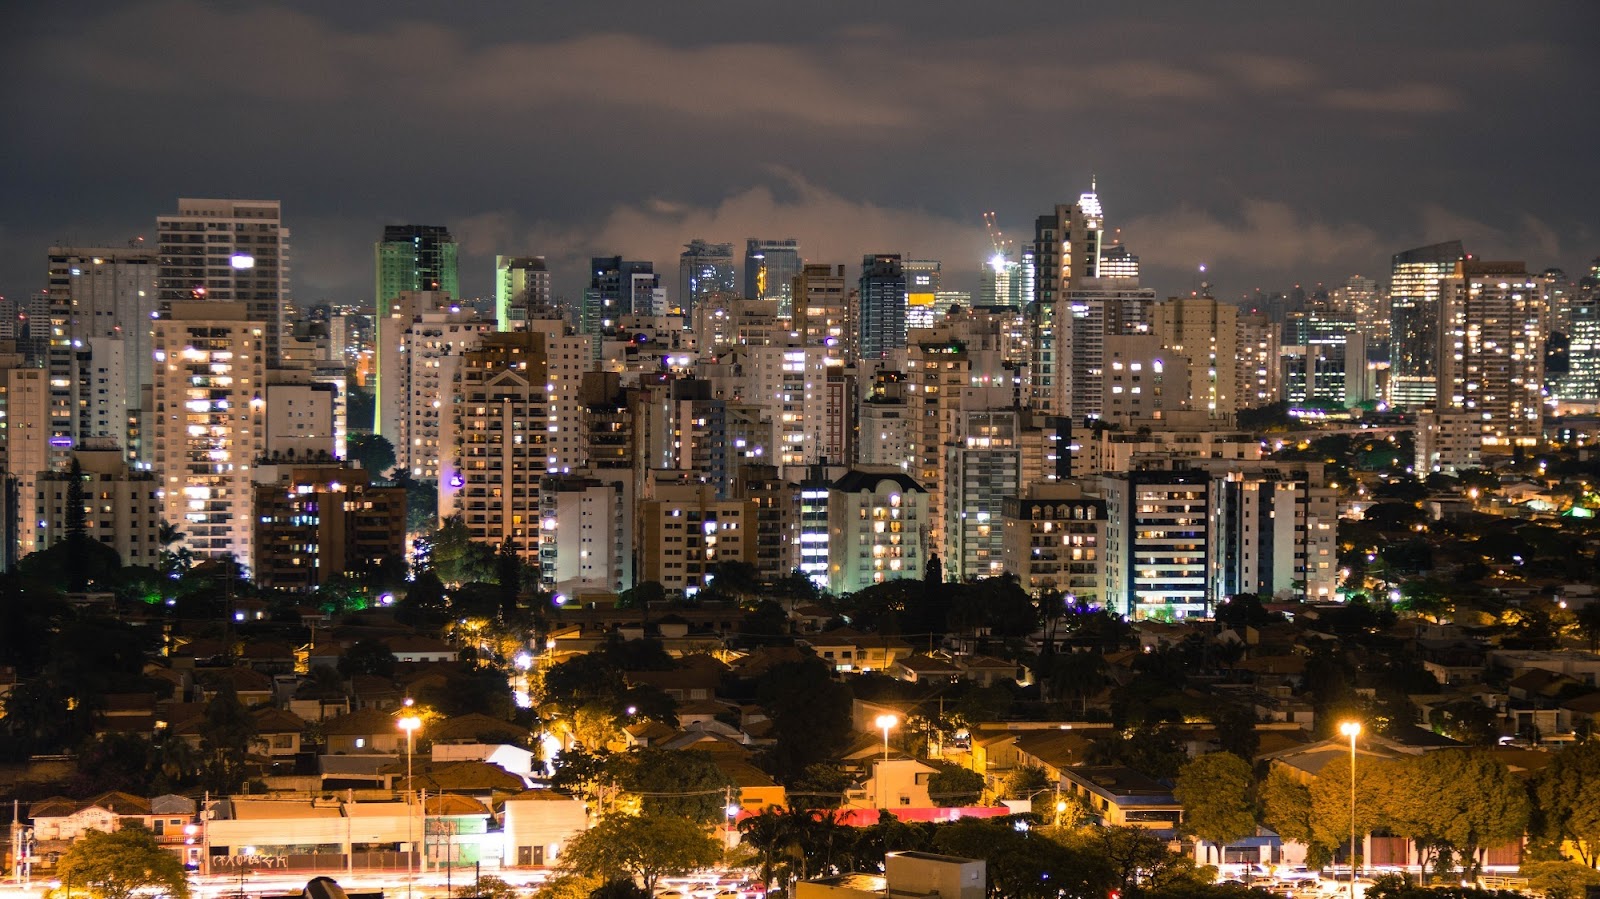 Vista da cidade São Paulo, com prédios e casas.